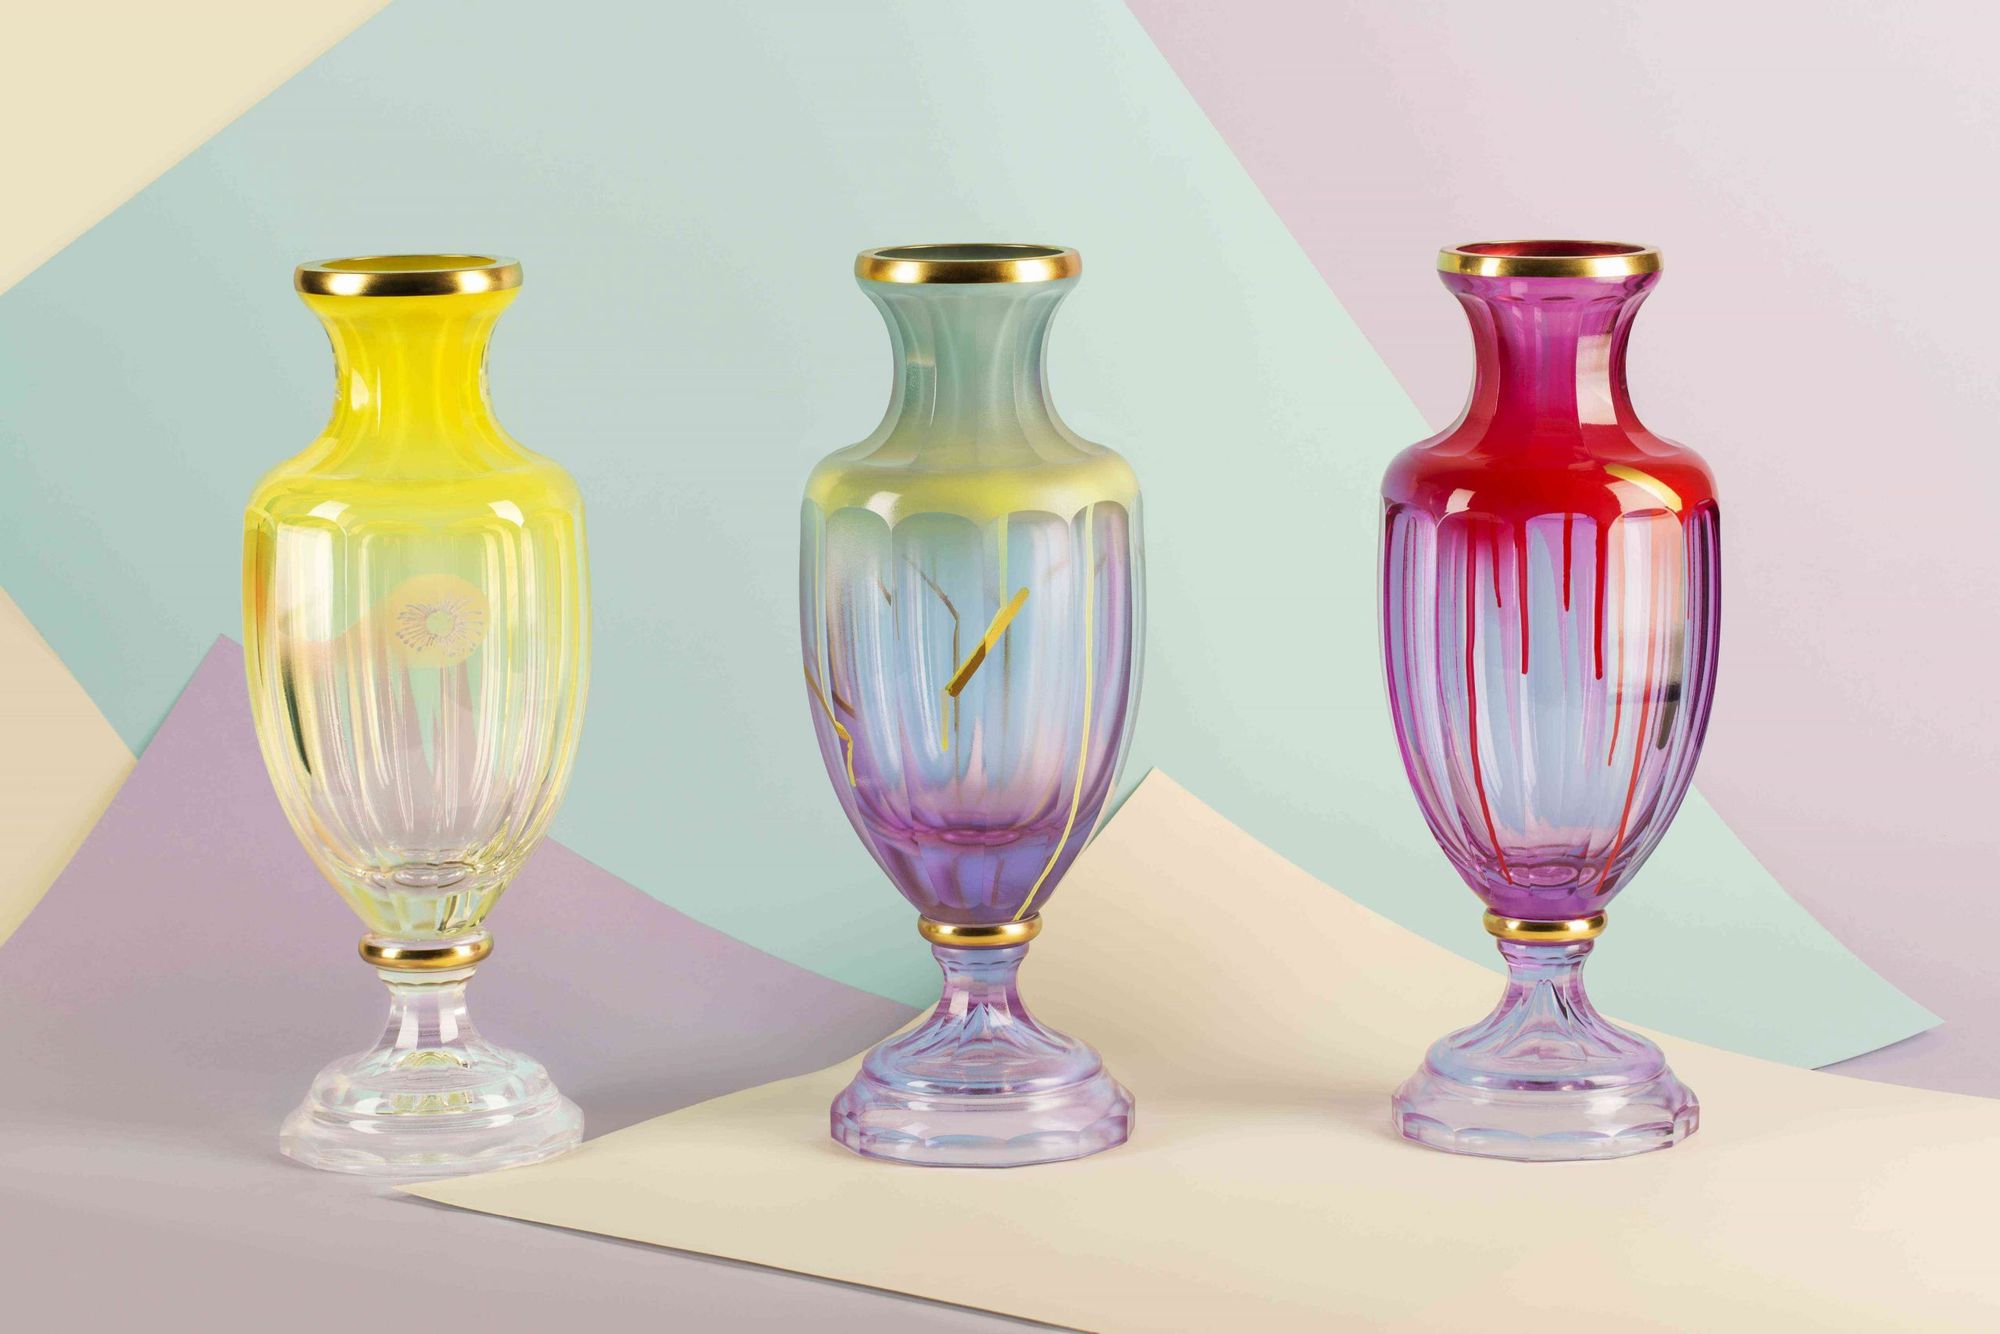 Love – Humility – Patience | František Jungvirt Czech glass artist and designer